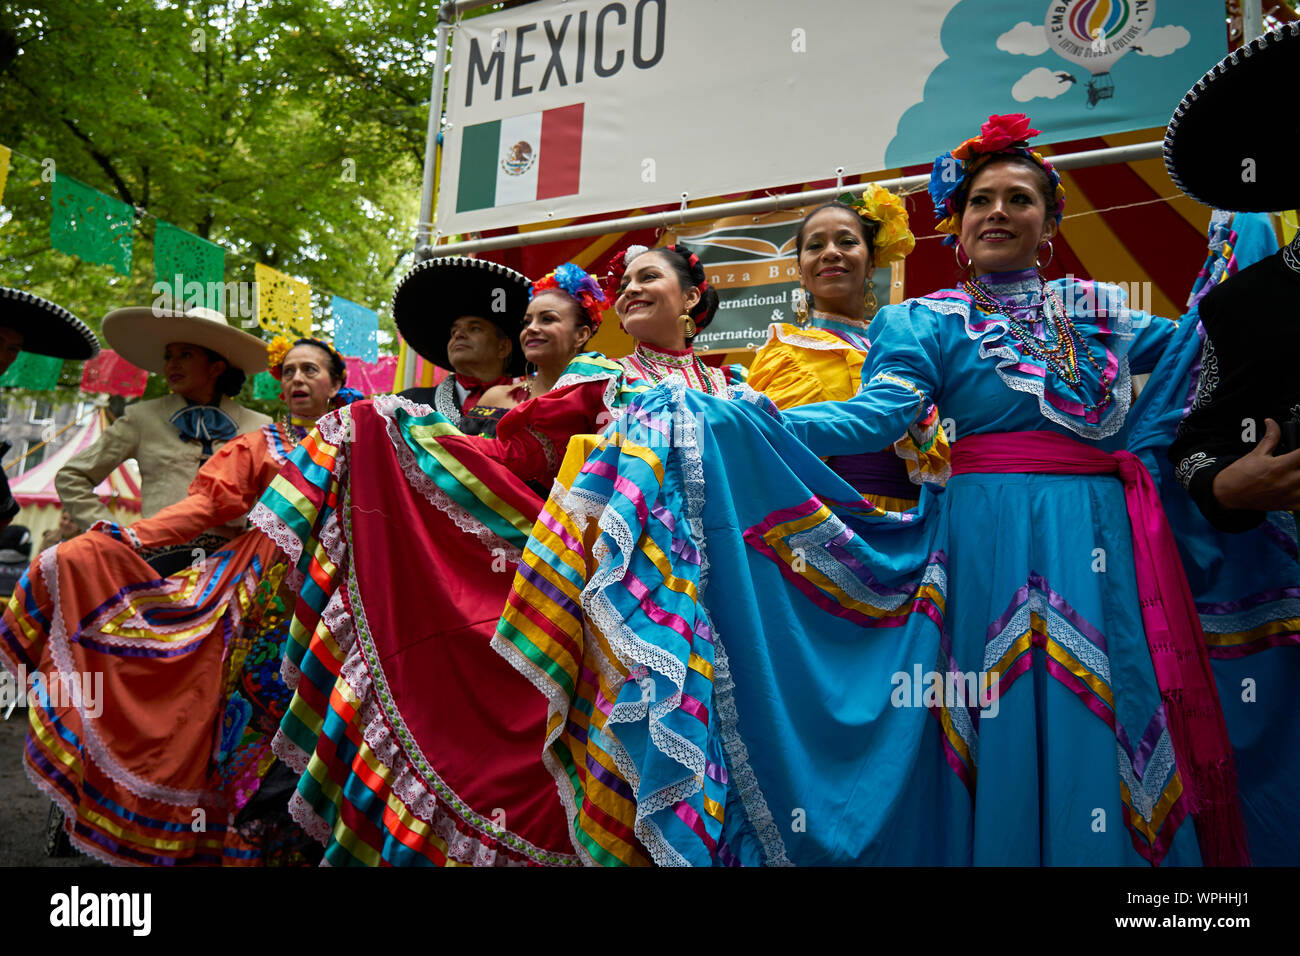 Un groupe de Mexicains posent dans le costume typique en face de la Mexican Stand. Banque D'Images